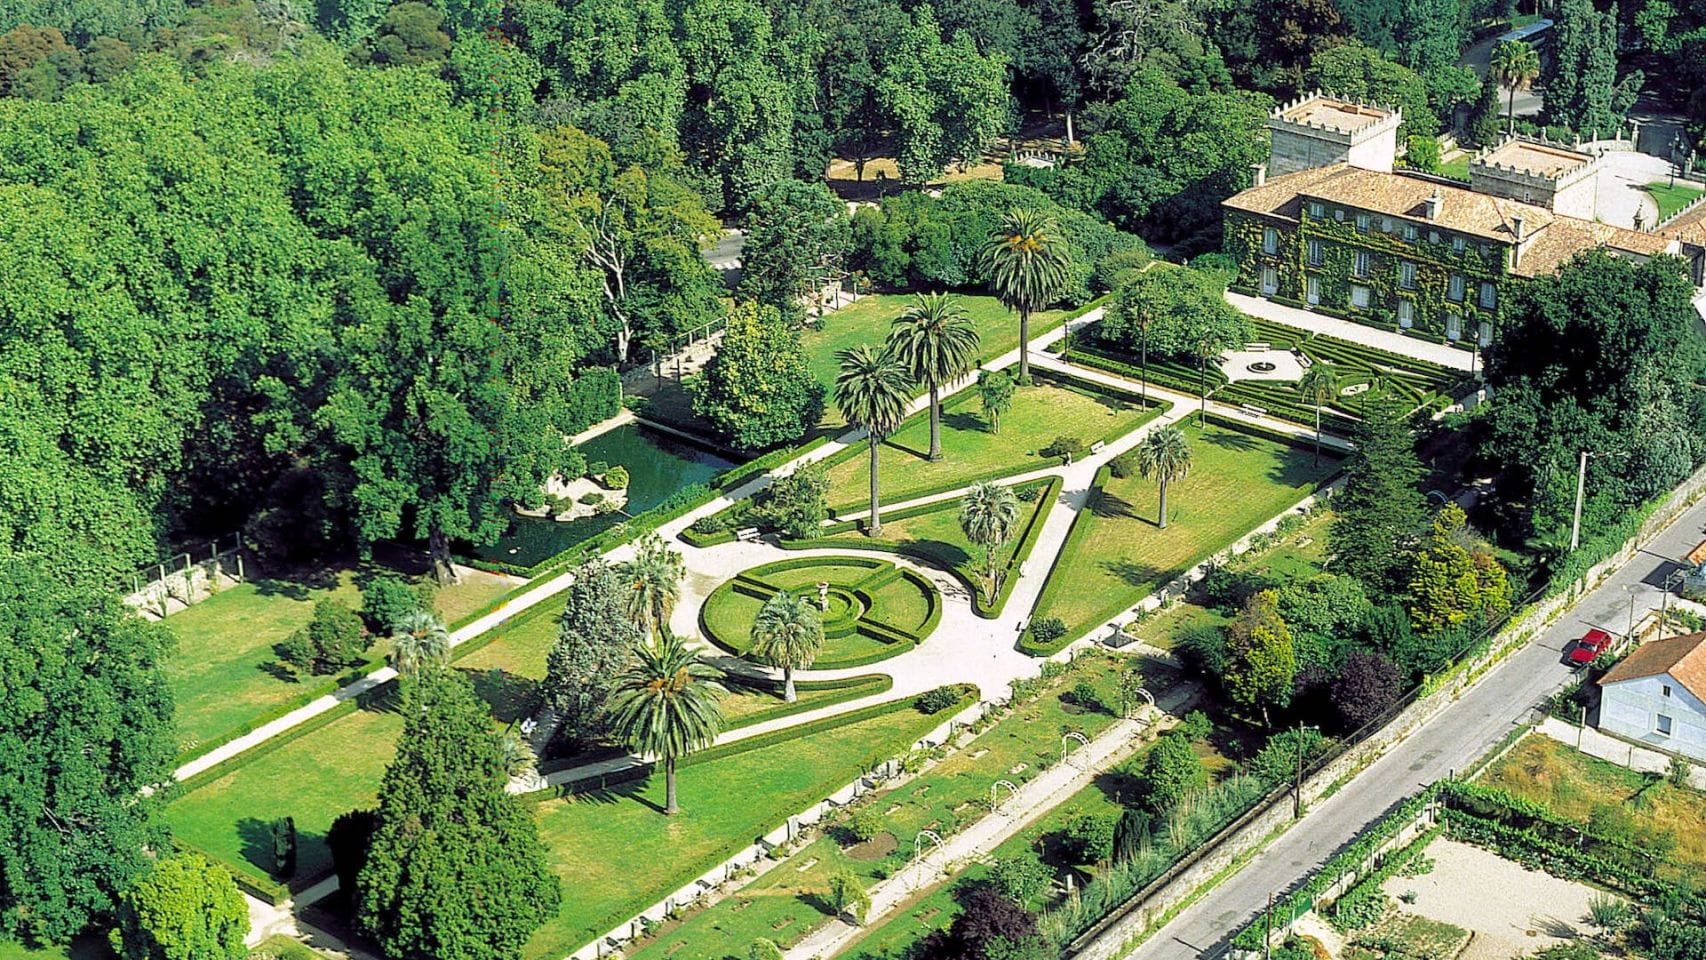 Jardines del Pazo Quiñones de León.